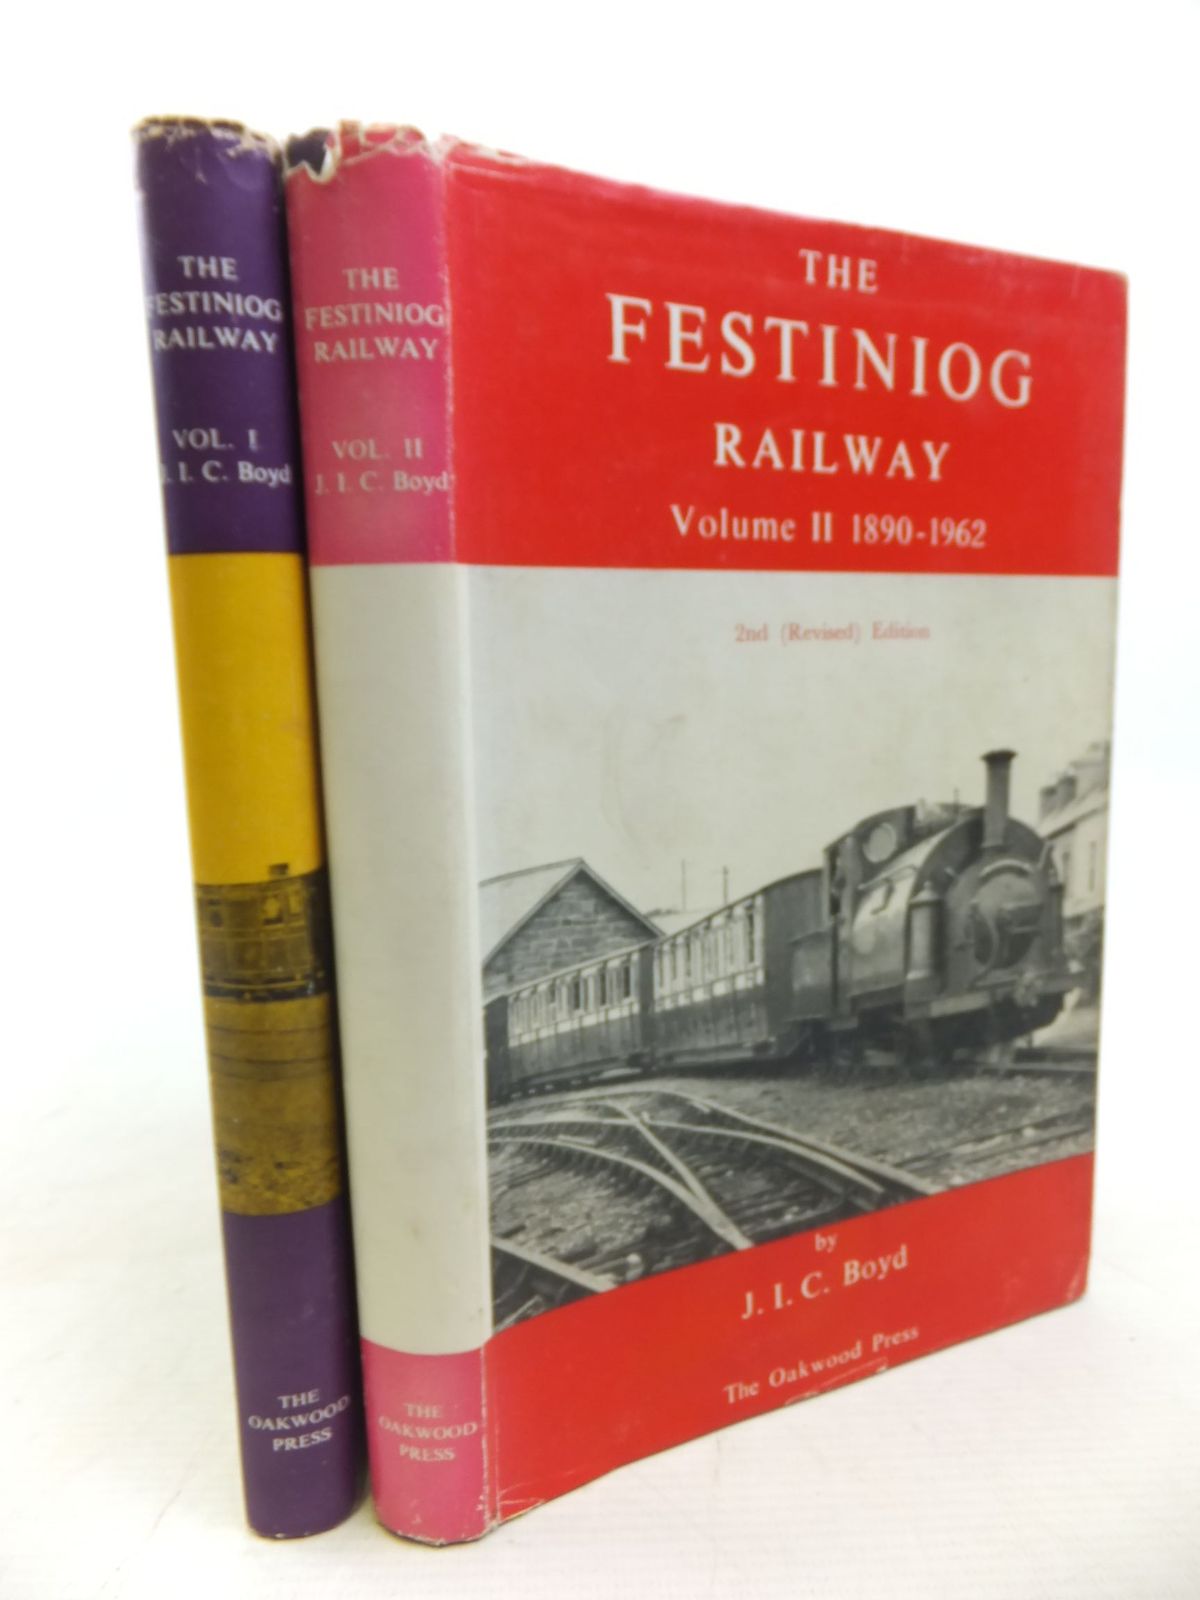 The Festiniog Railway